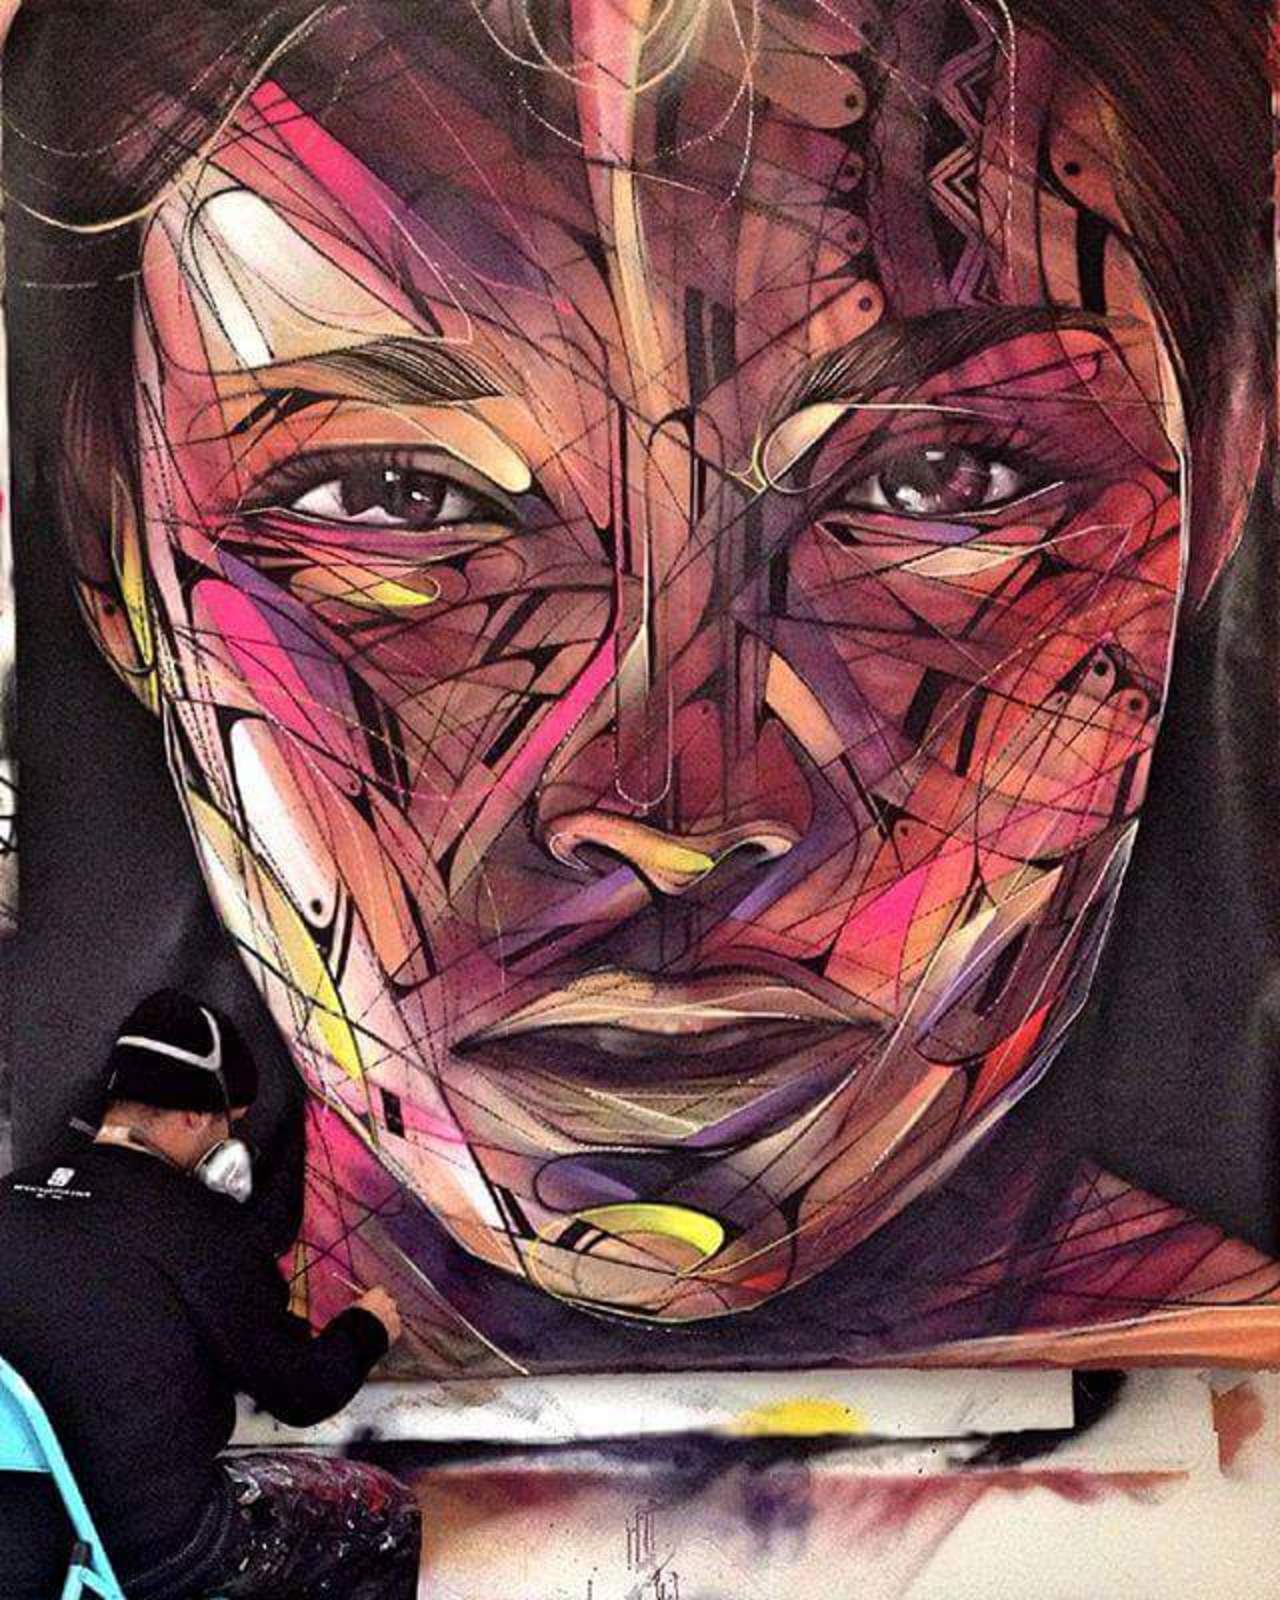 #artwork of hopare1 
#art
#streetart 
#graffiti 
#urbanart 
#mural 
#muralesArt https://t.co/VTyIKXLnPn